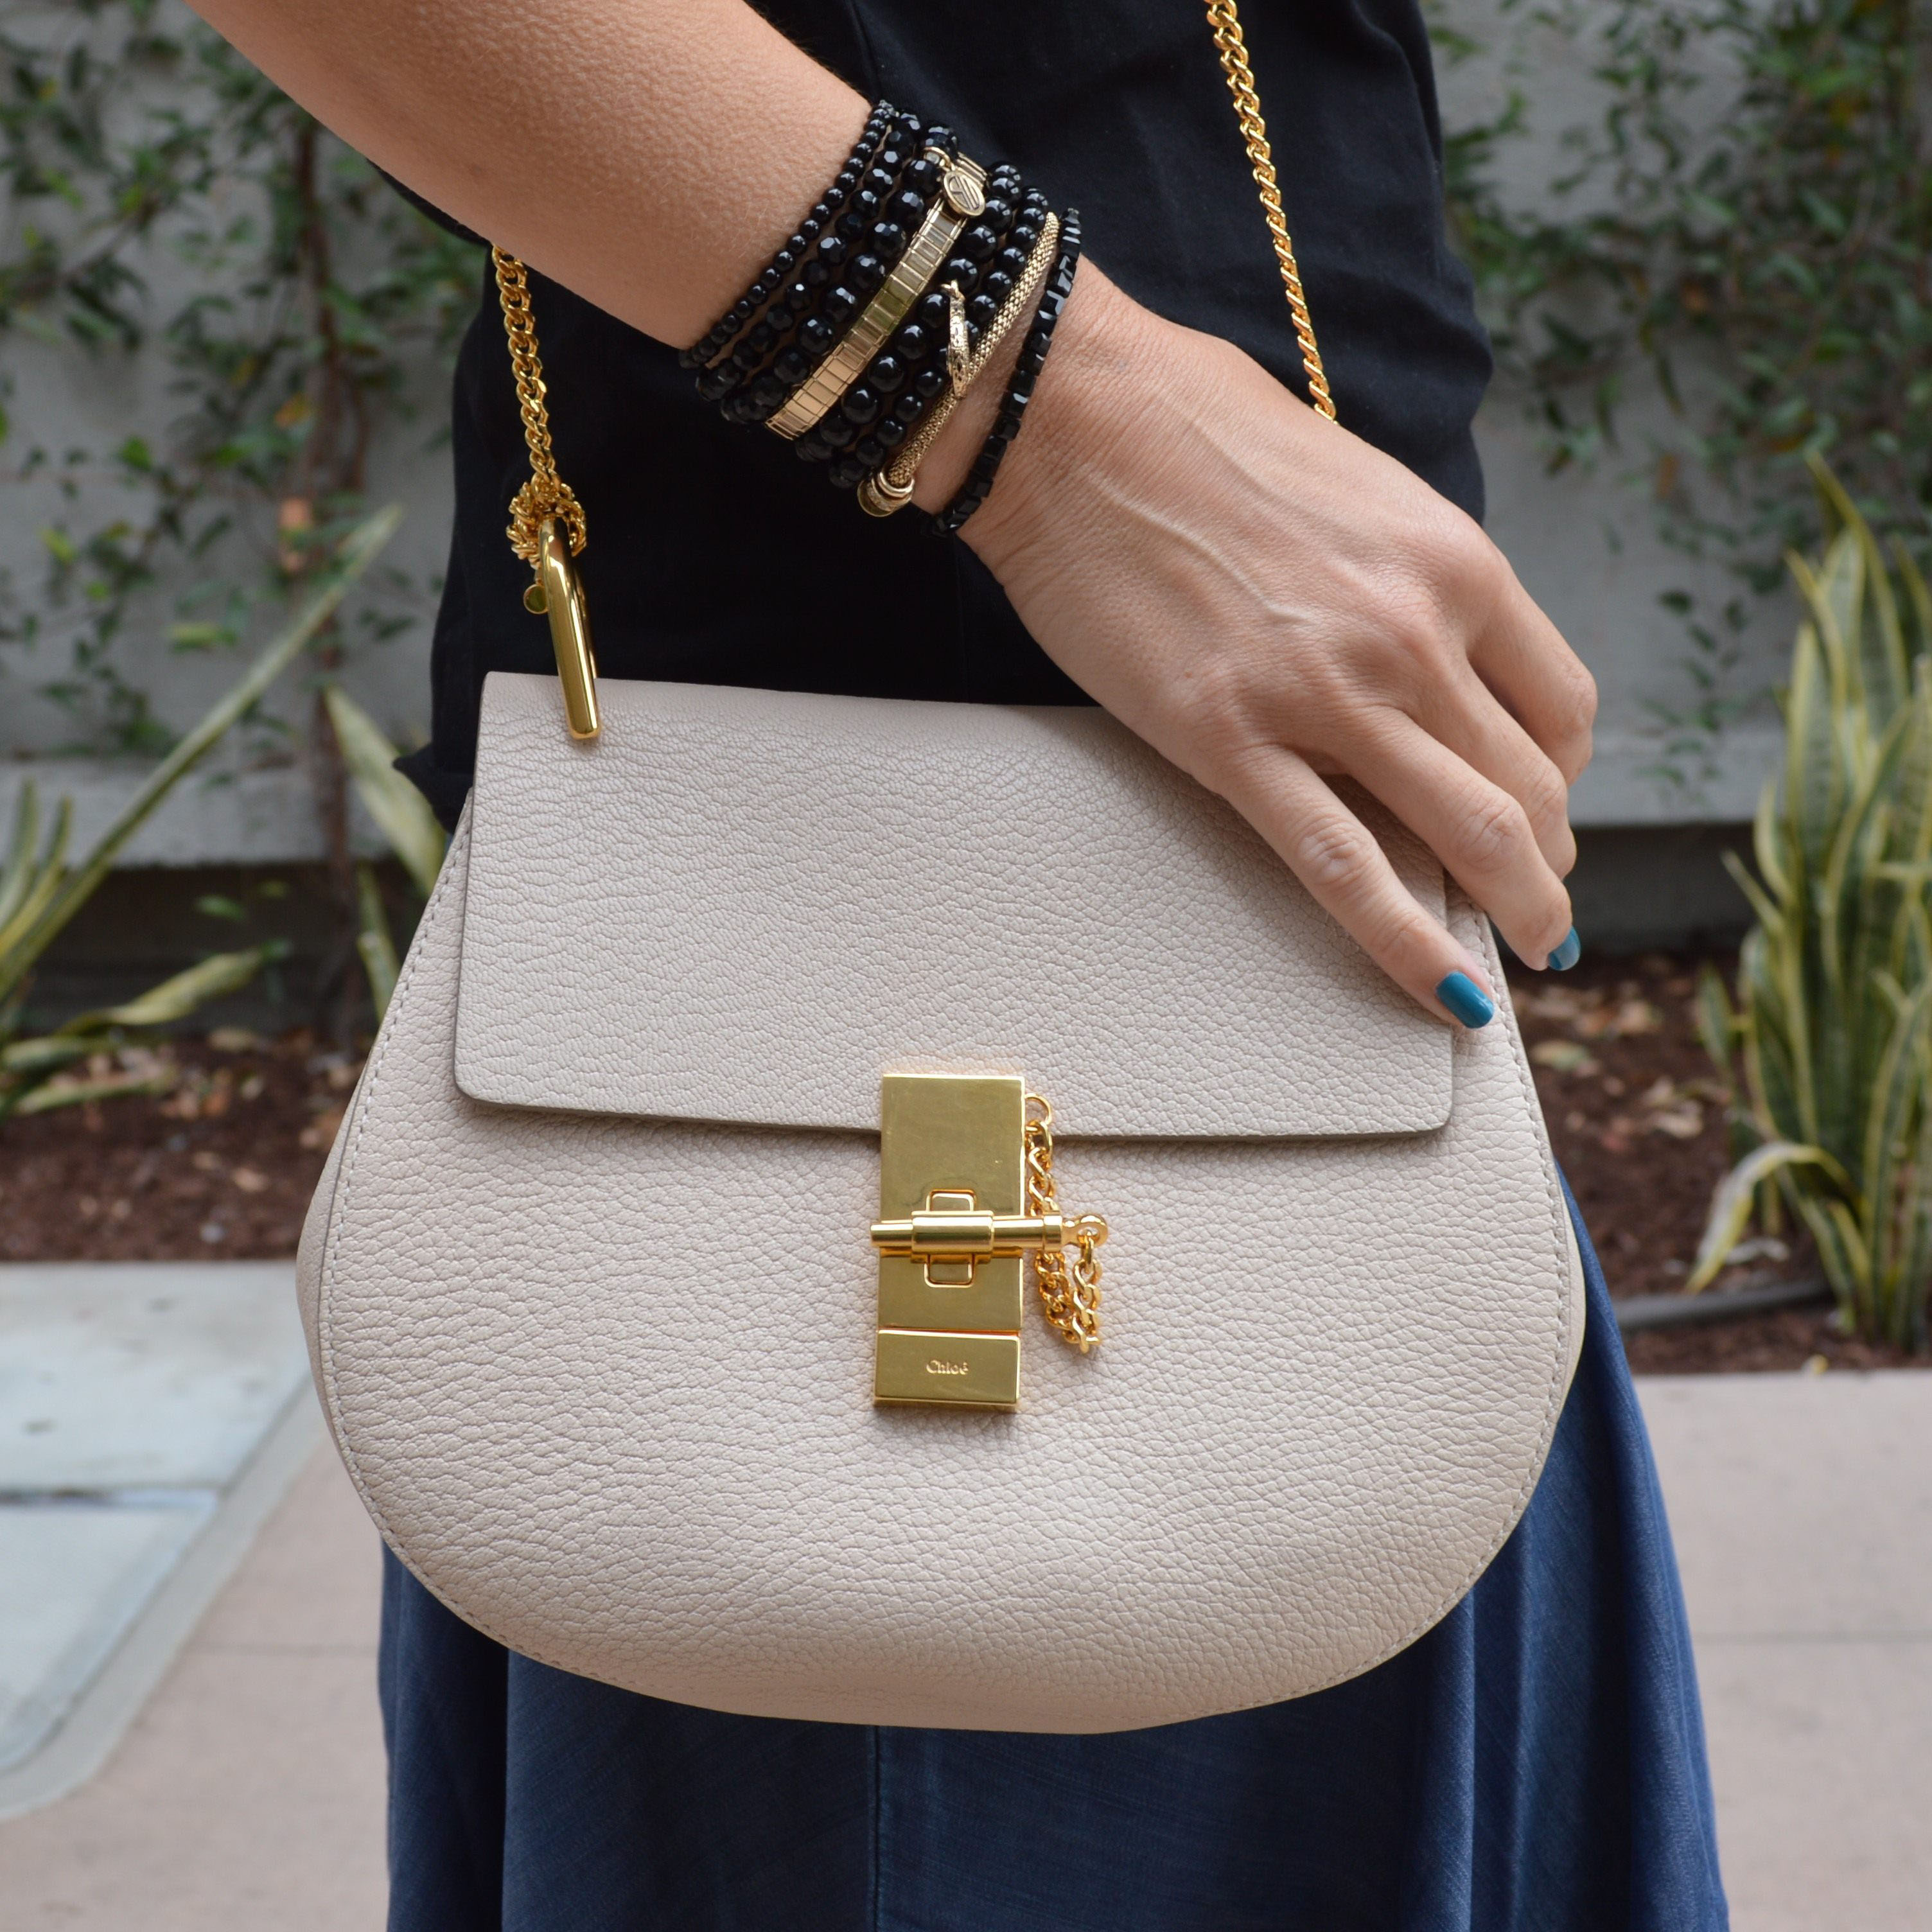 Chloe Drew shoulder bag | The new \u0026quot;IT\u0026quot; bag for 2015 - Bay Area ...